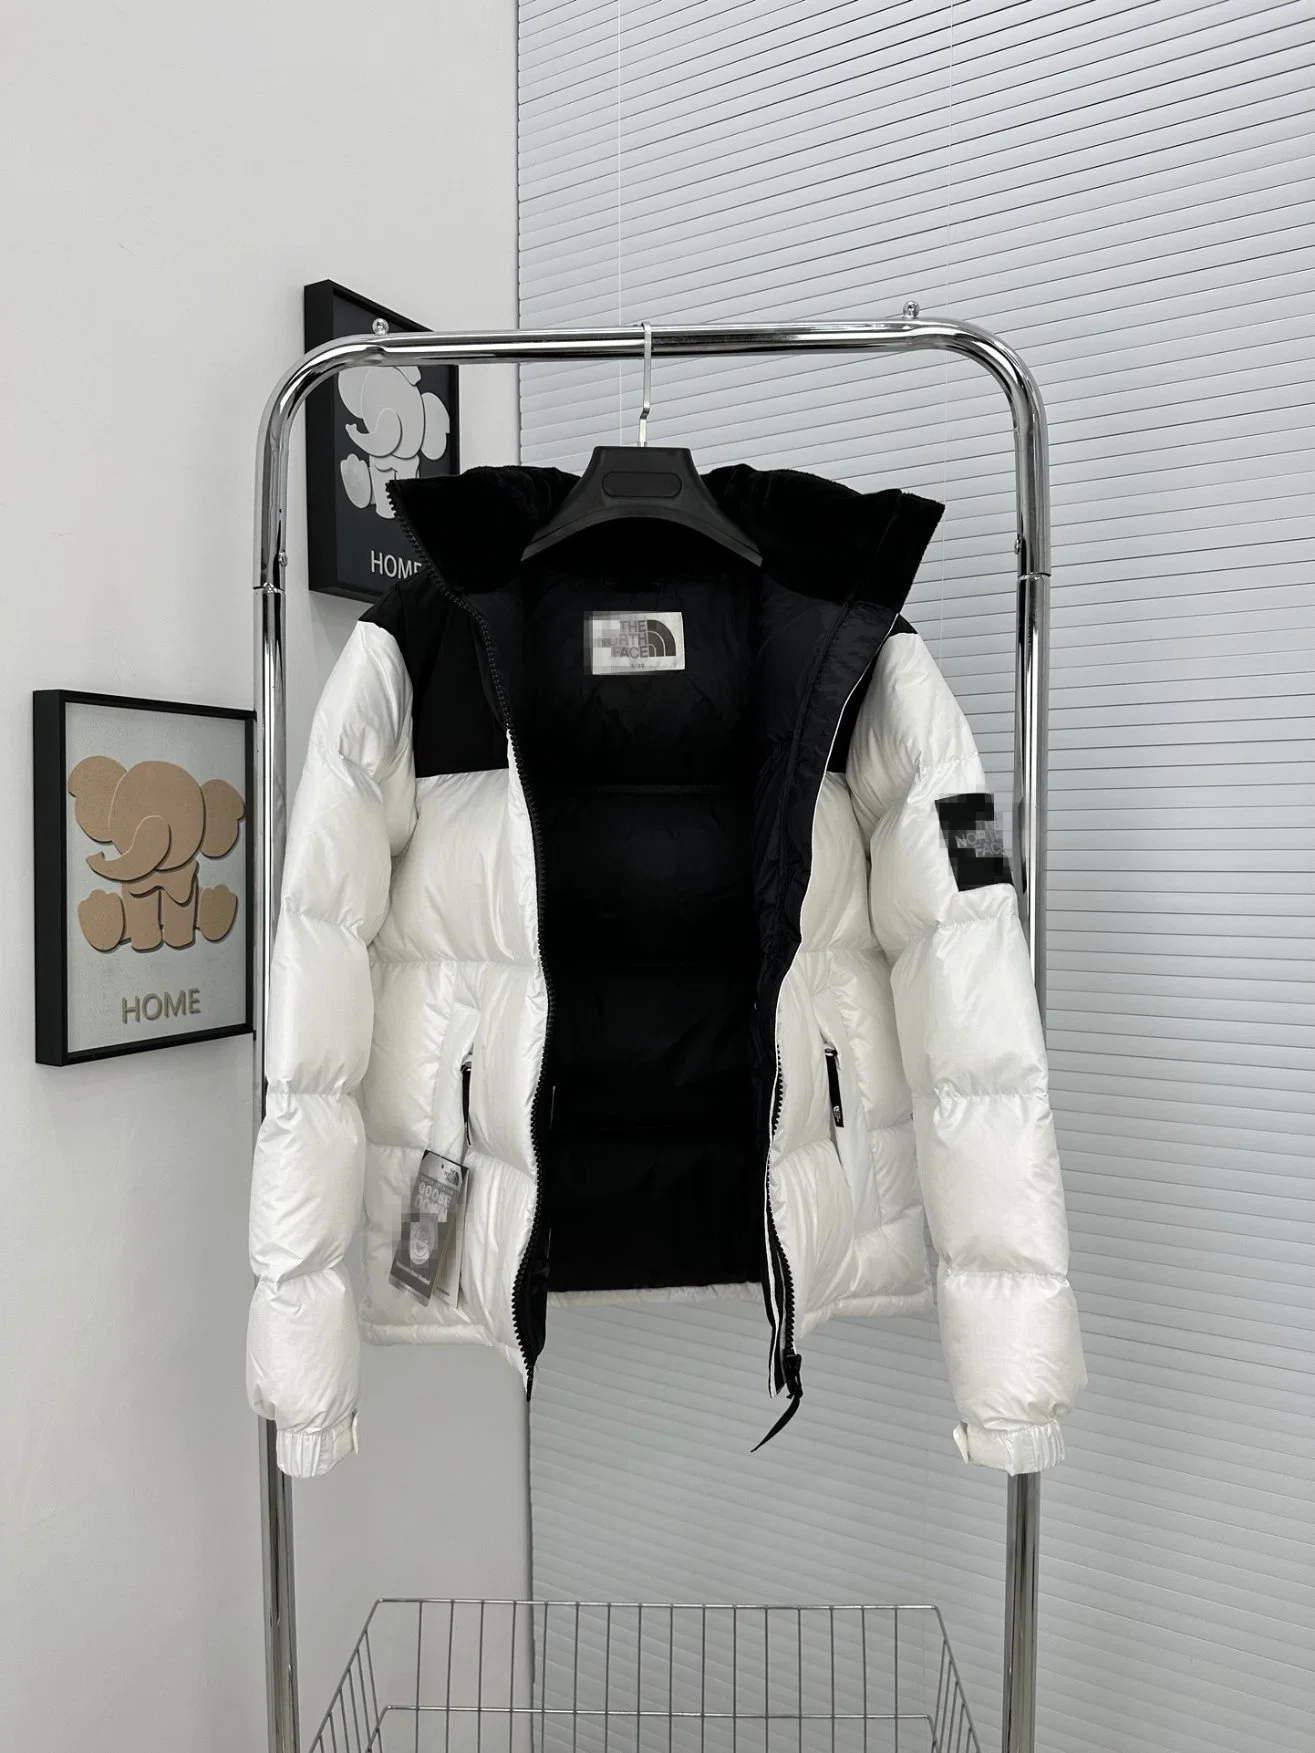 Дизайн высокое качество мужчины женщины Зимний отдых поддержание тепла роскошь Бренд Мода одежда Puffer Куртки Куртки Одежда